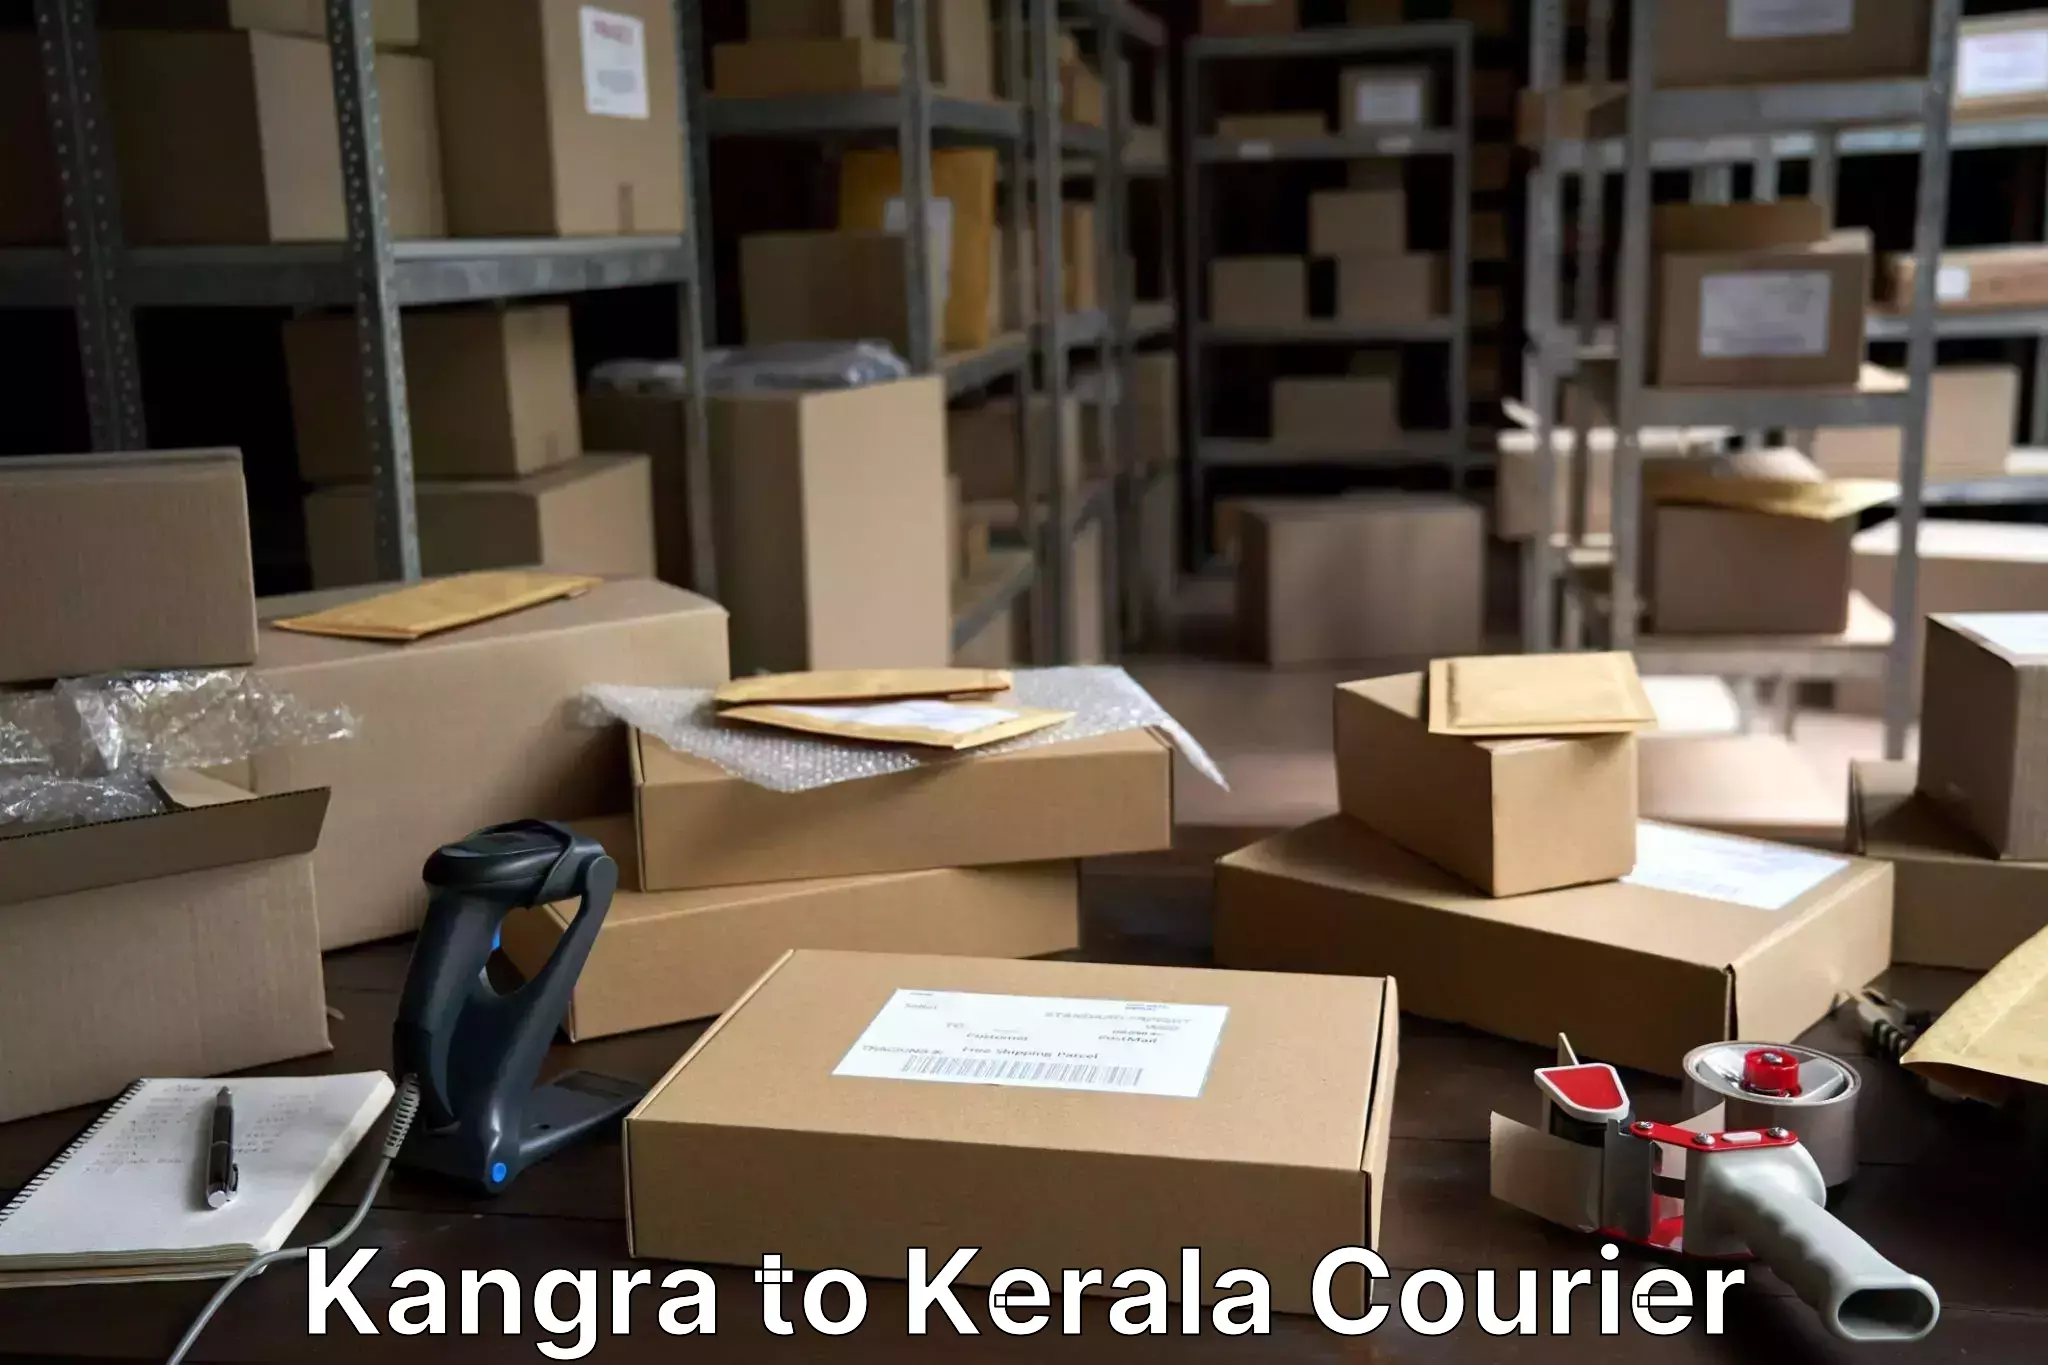 Baggage transport professionals Kangra to Pala